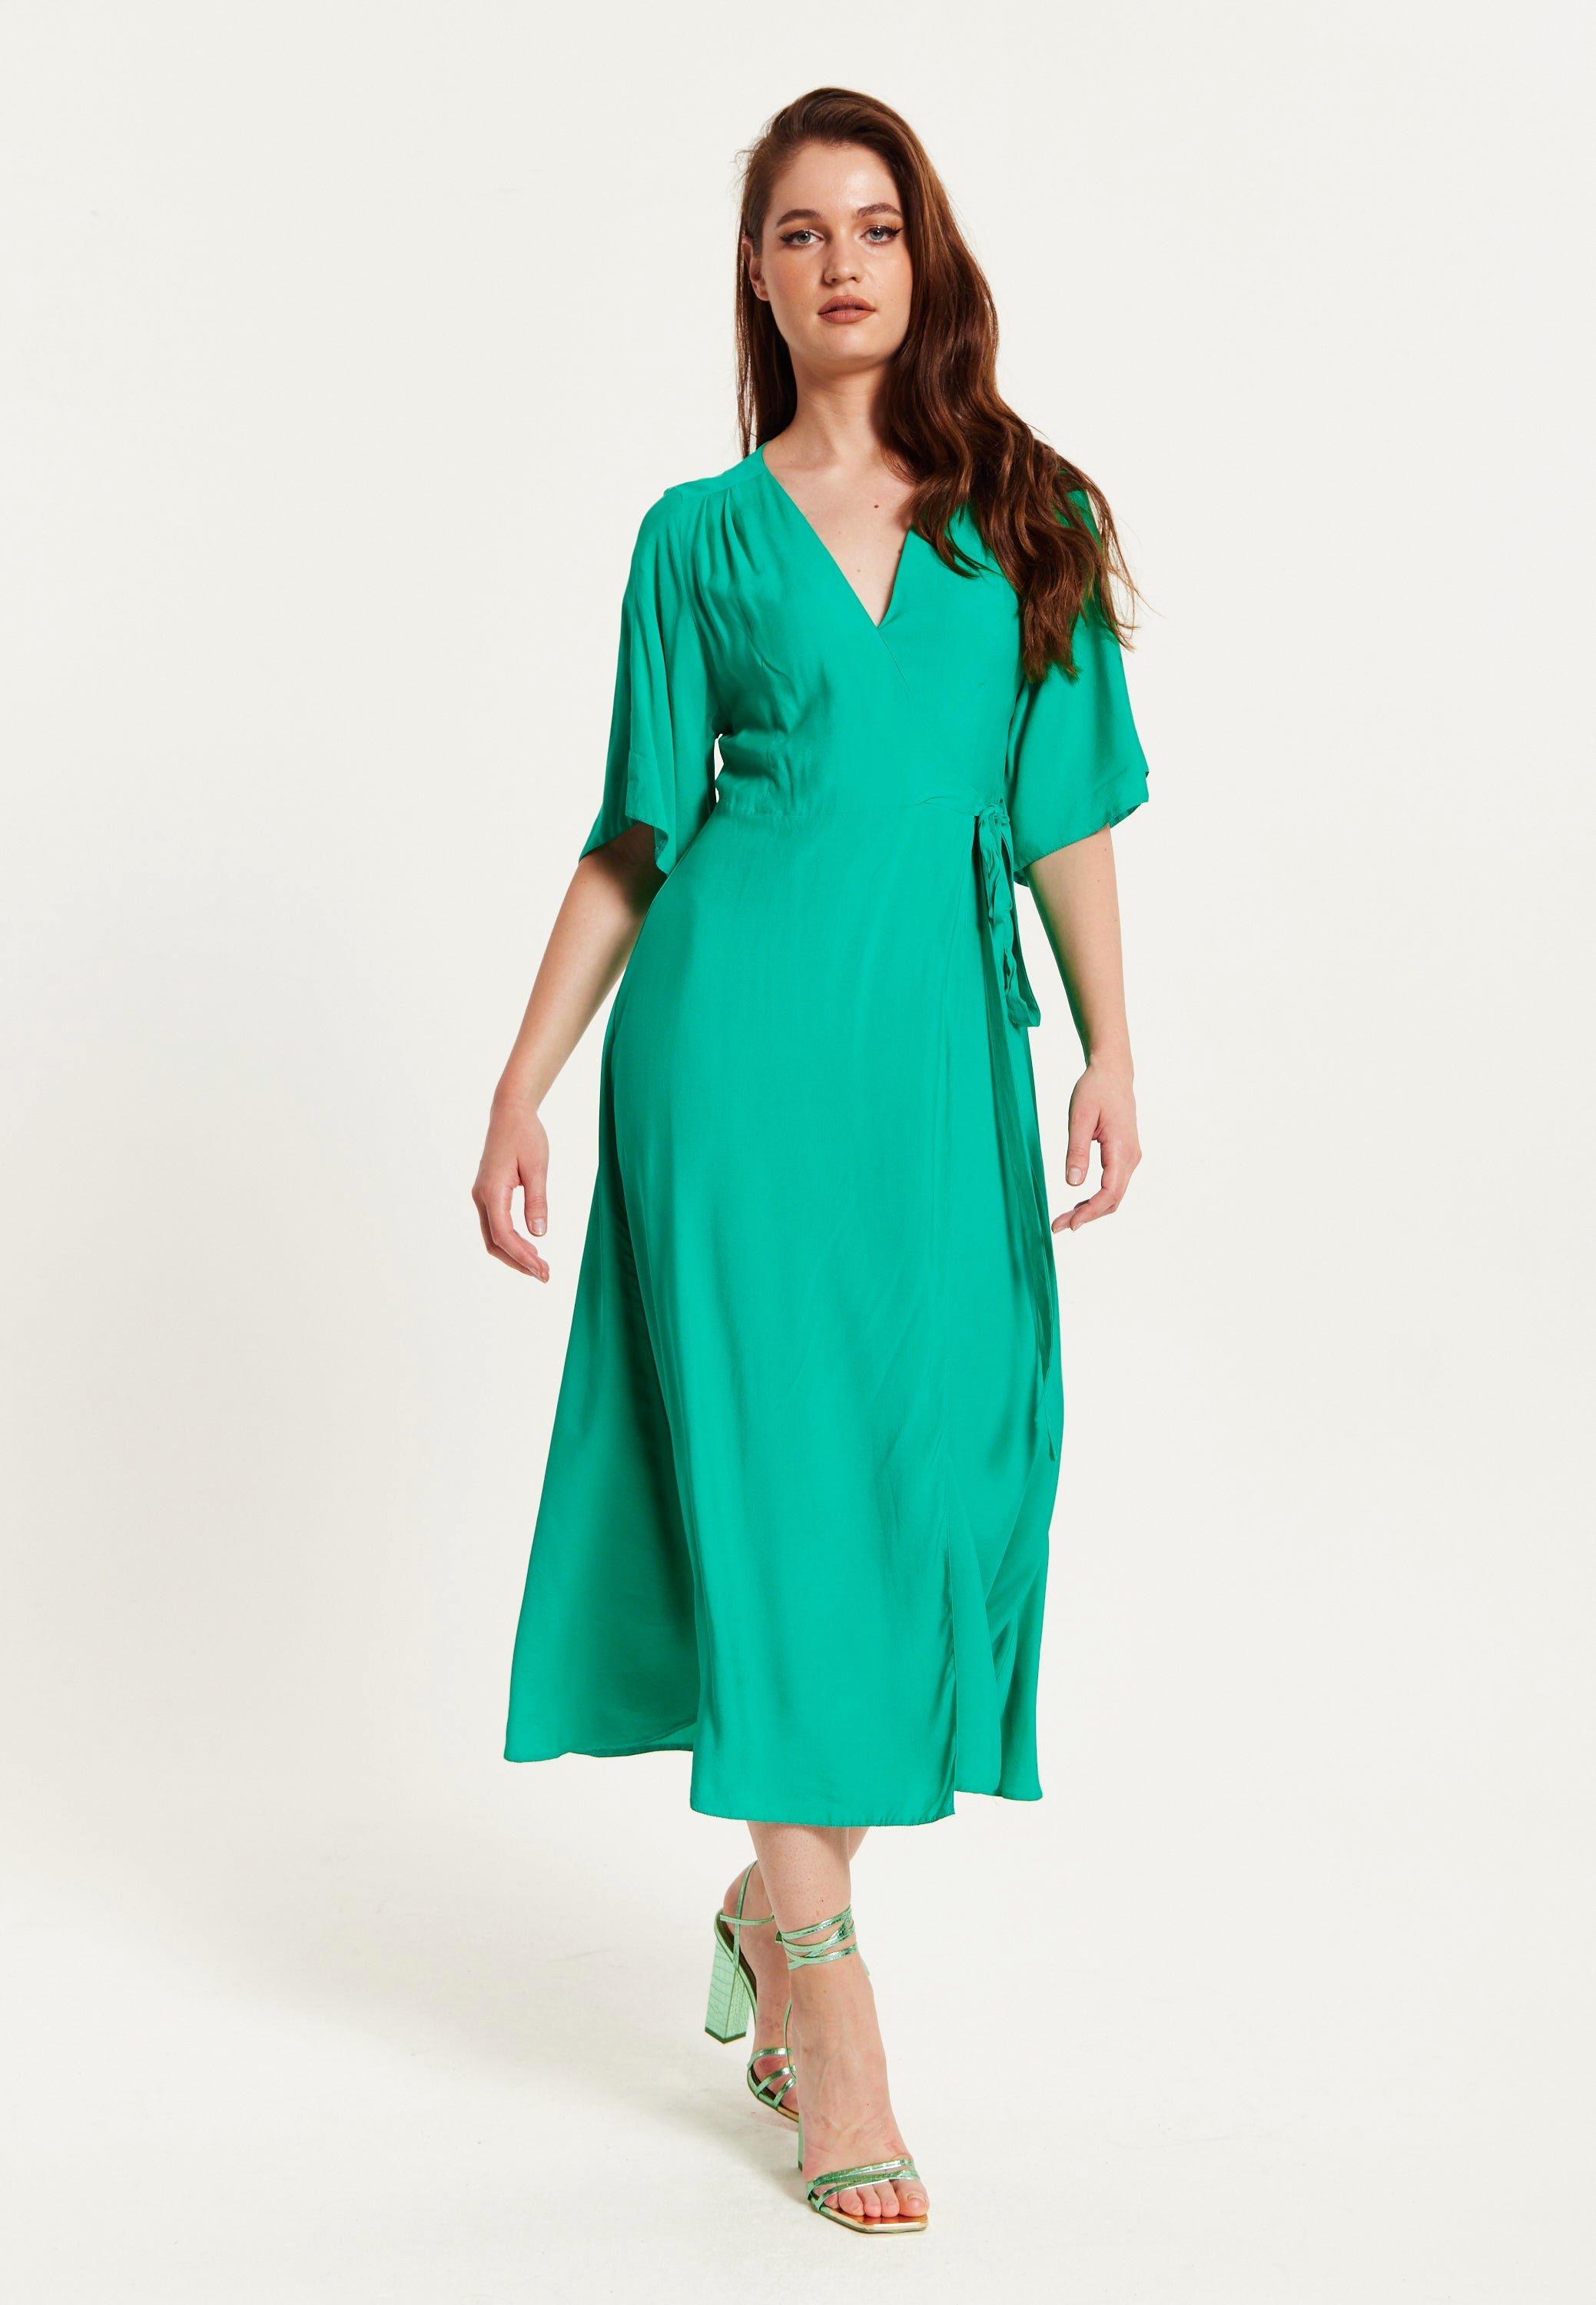 Green Maxi Wrap Dress With Kimono Sleeves